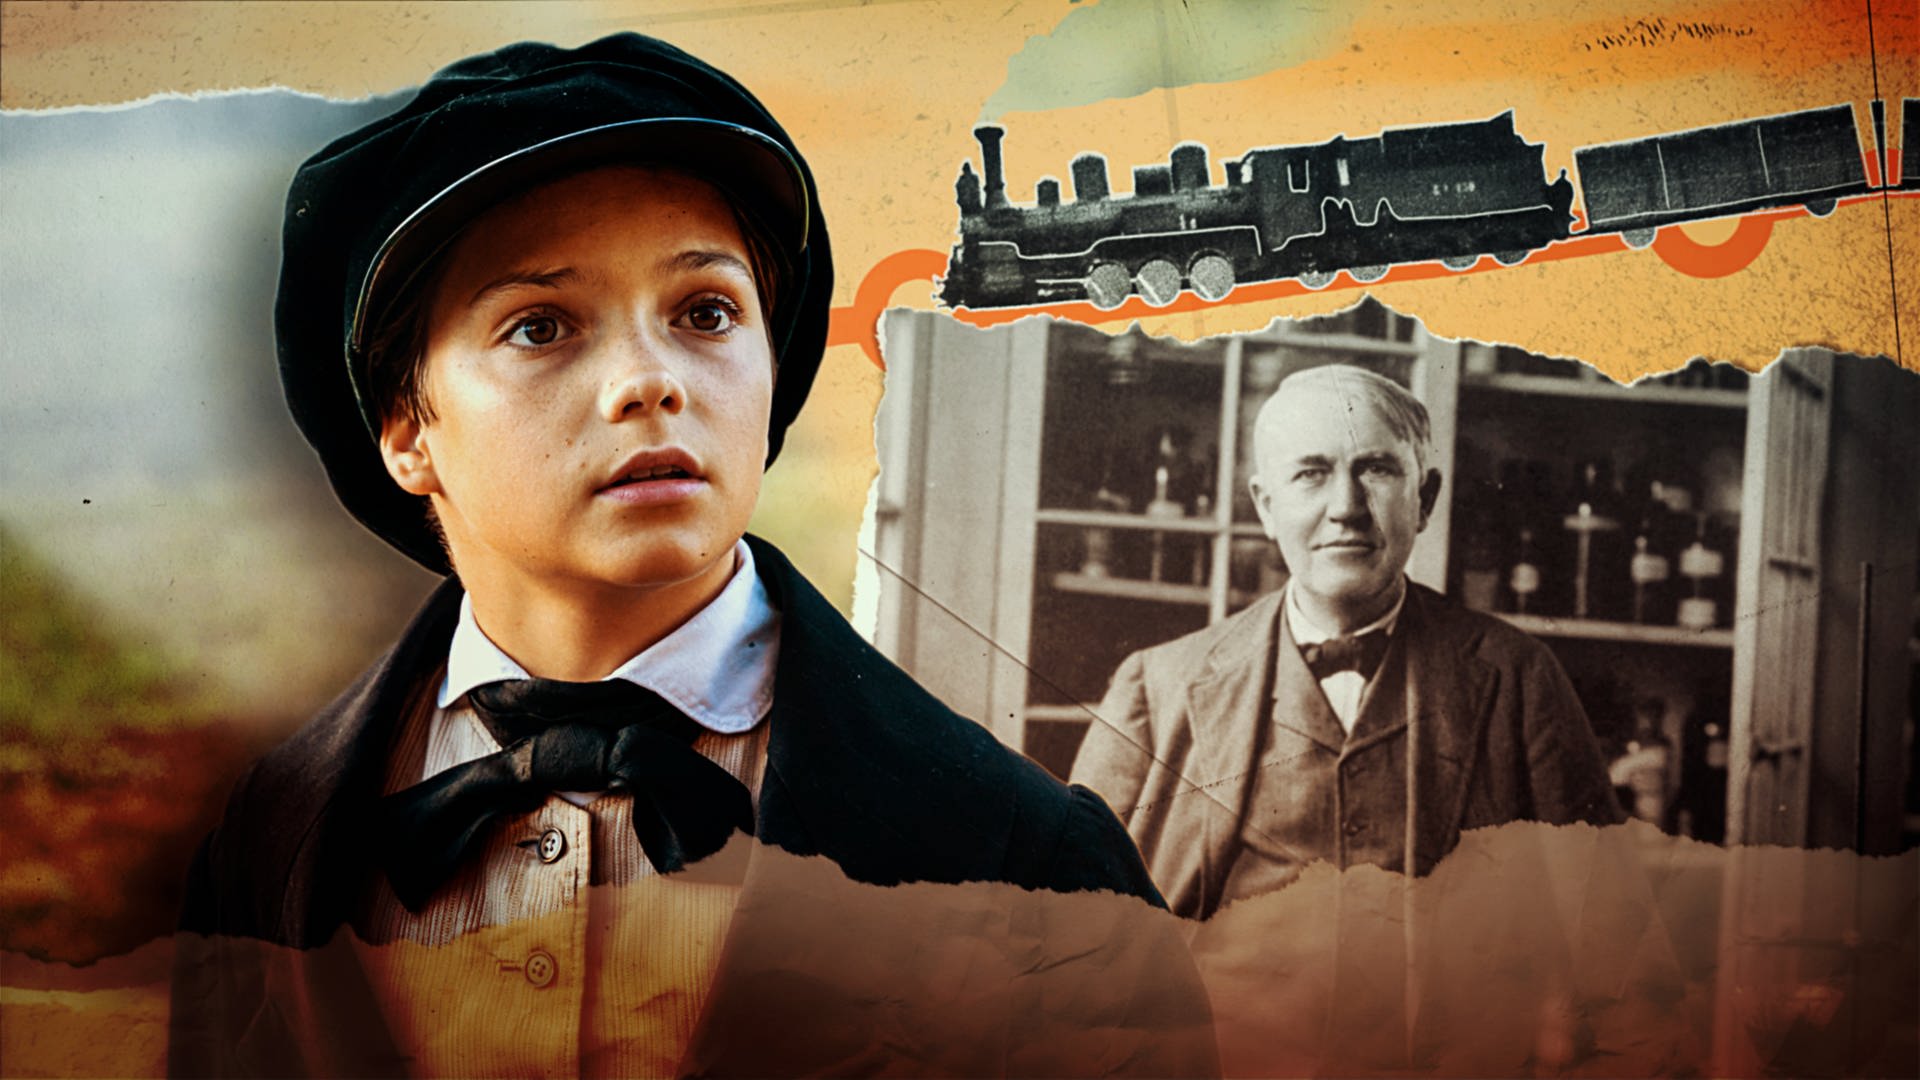 Collage aus einem Bild von Thomas Alva Edison und der Filmfigur.